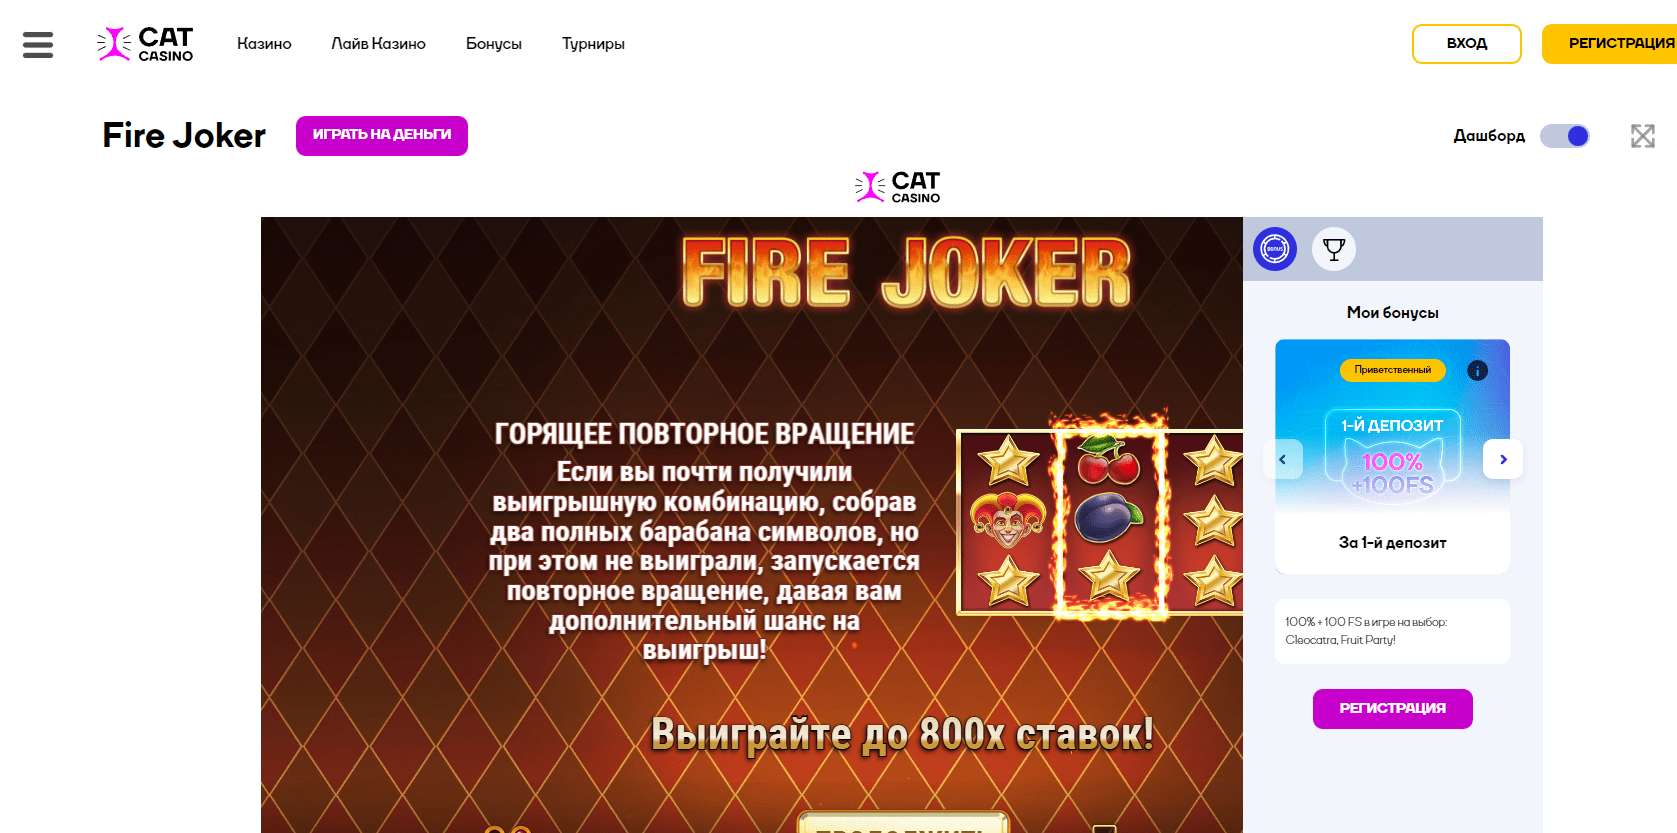 Fire joker verkossa Cat casinolla